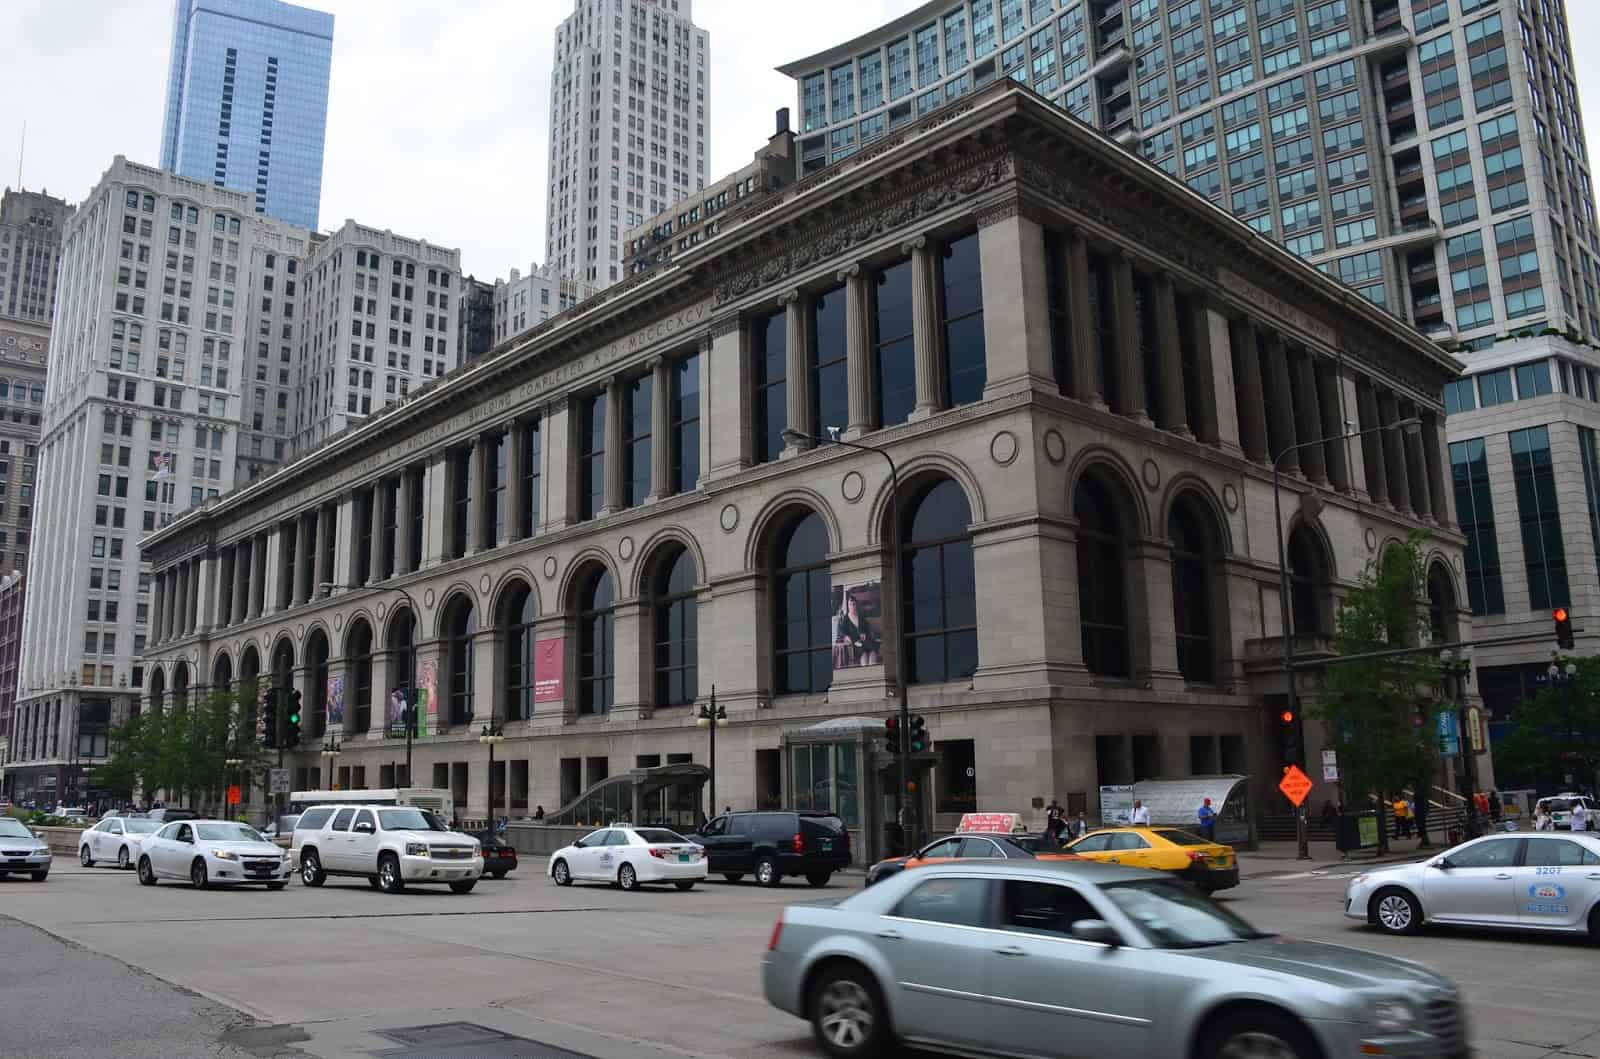 Chicago Cultural Center on Michigan Avenue